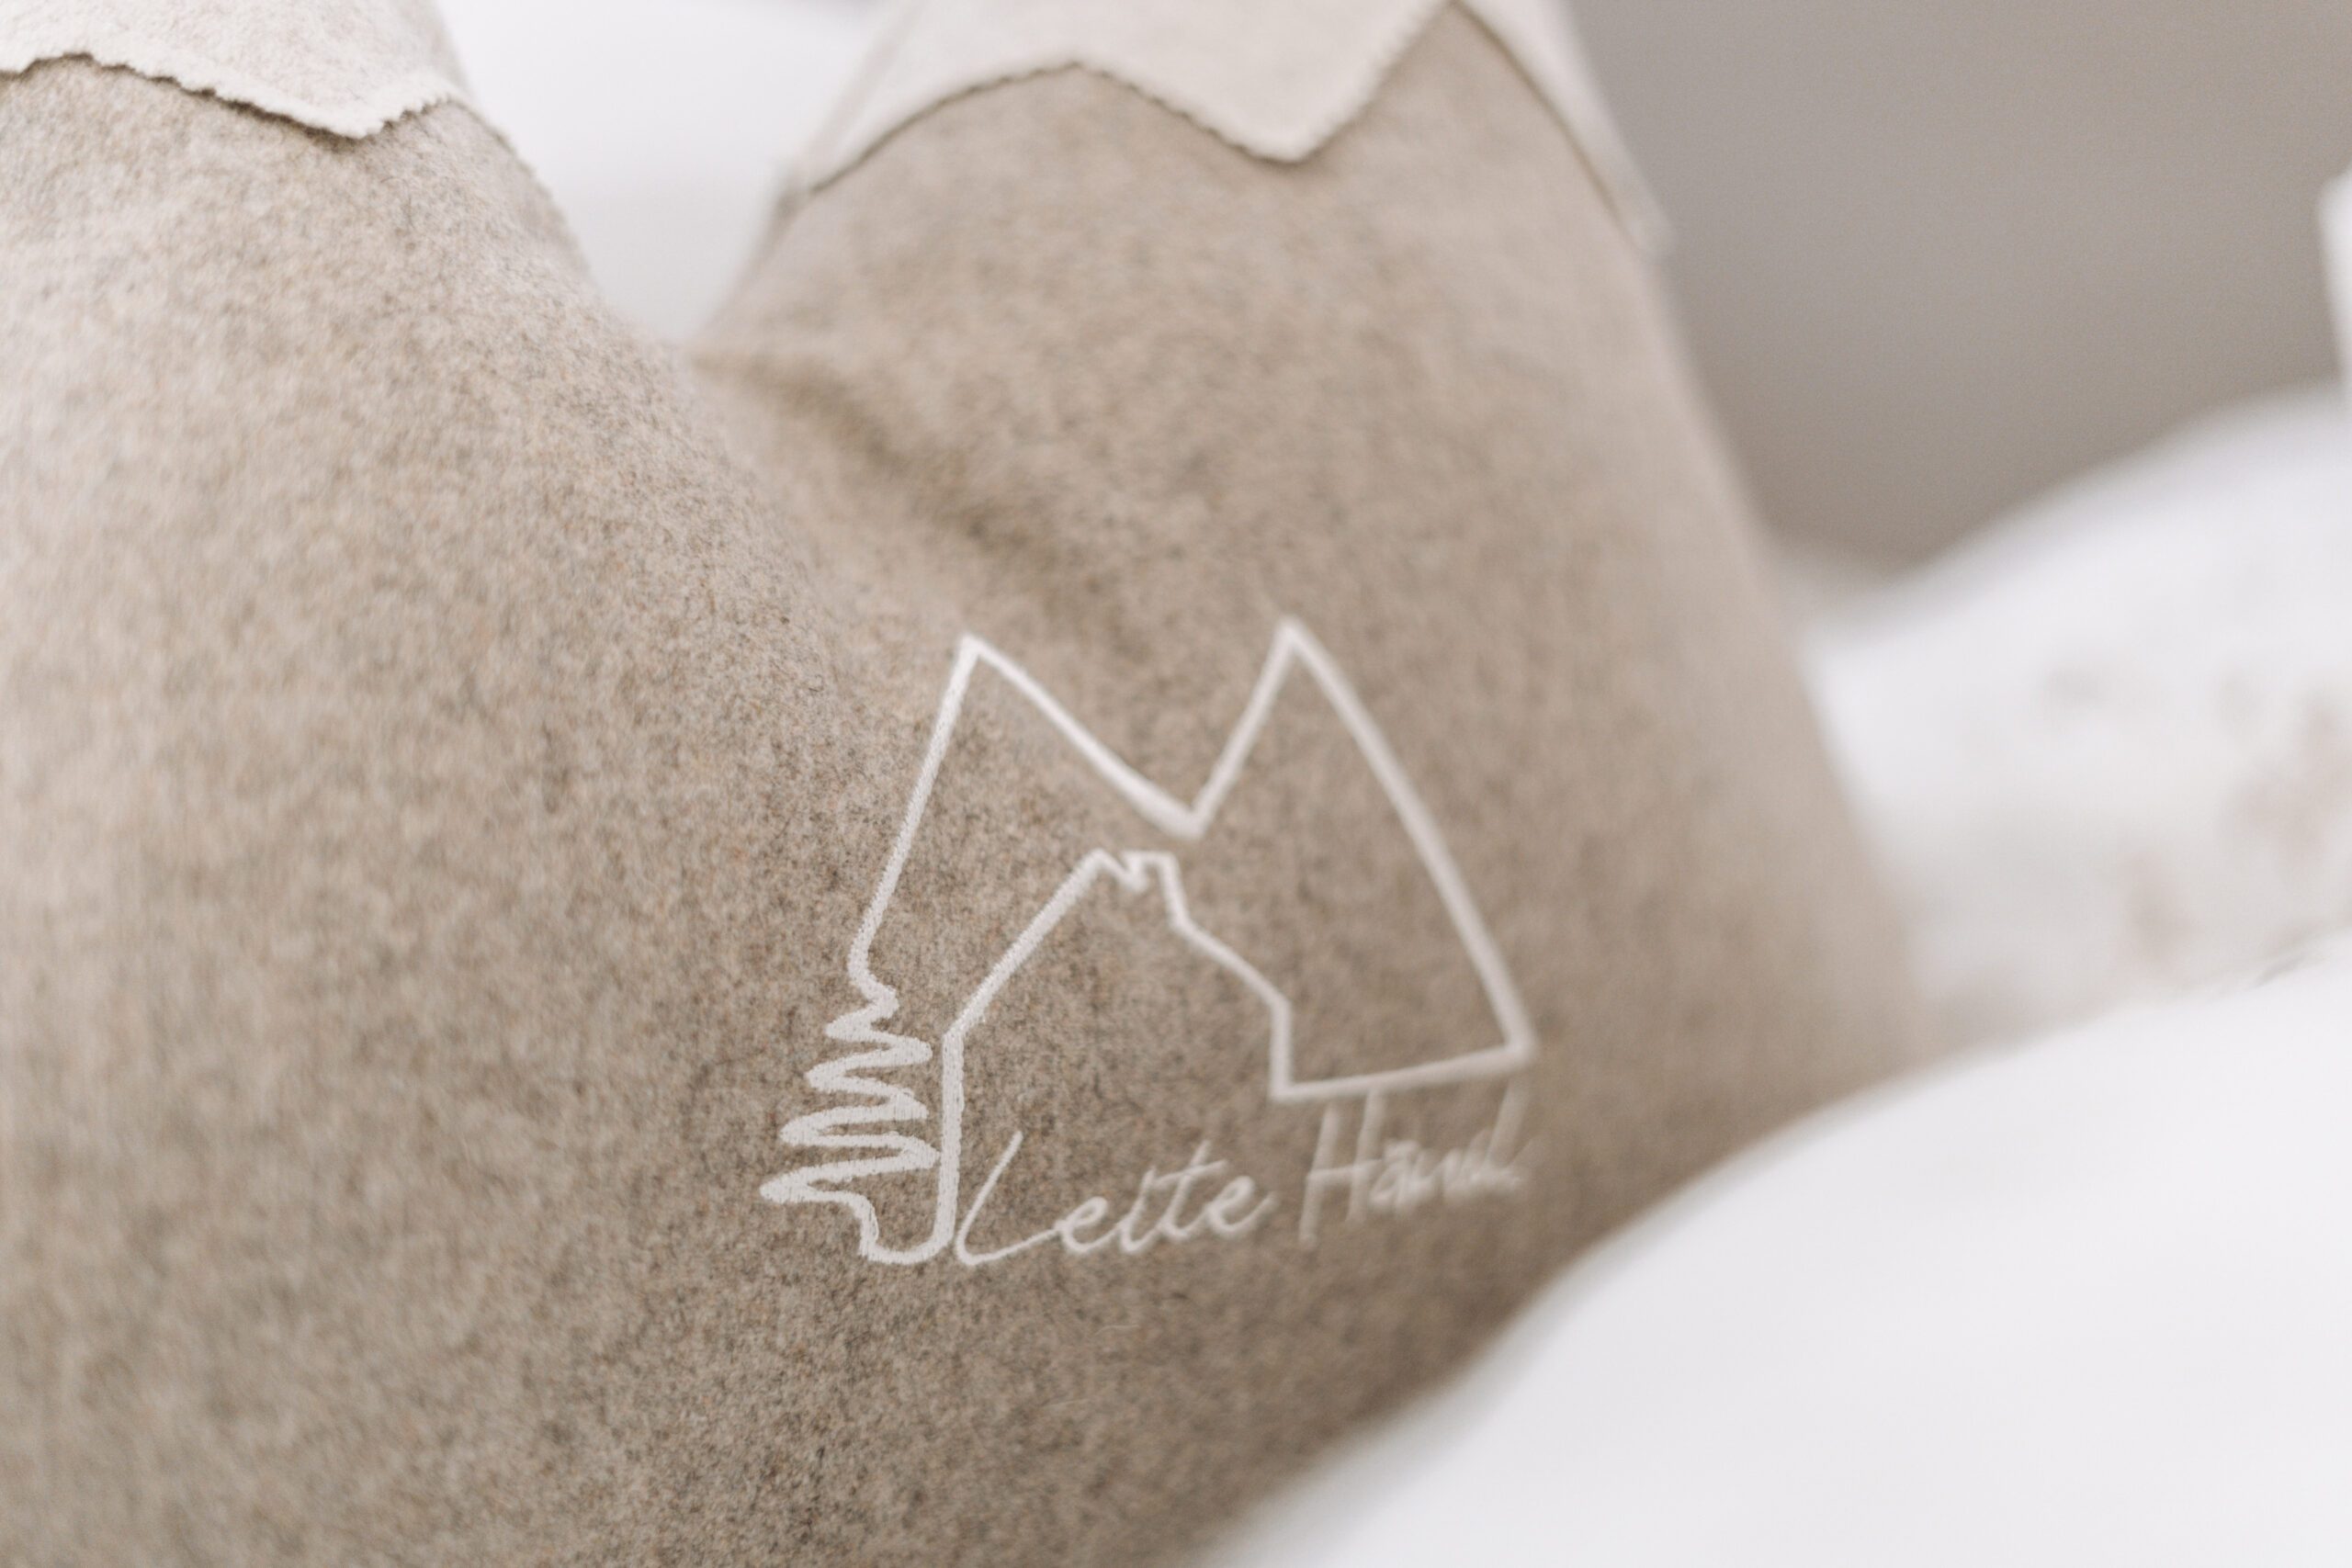 Bergpolster mit Logo Leite Häusl im Bett näher